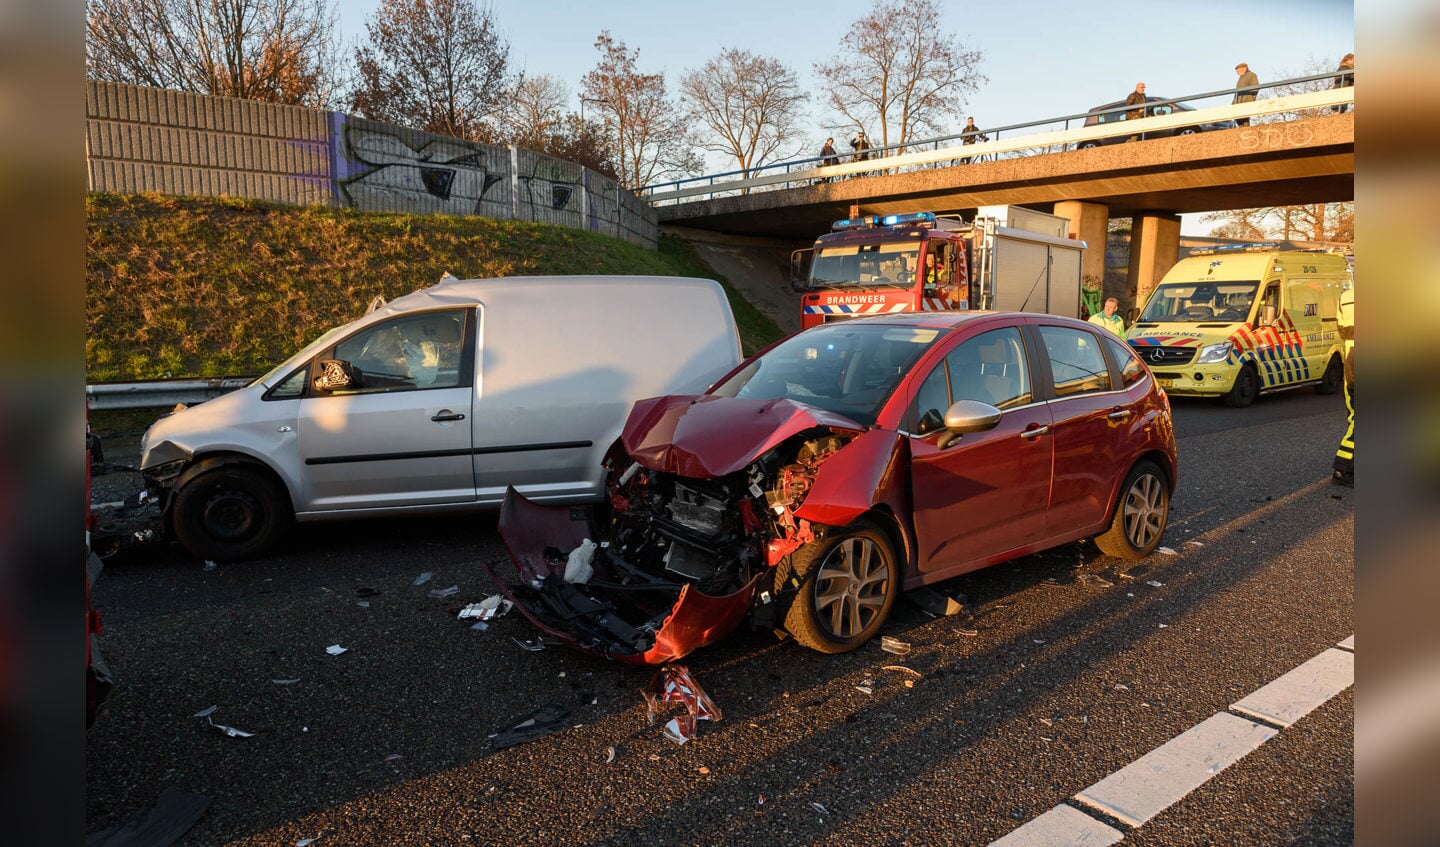 Ongeval A58 bij Ulvenhout op maandag 28 november. De veroorzaker reed zonder schade door.